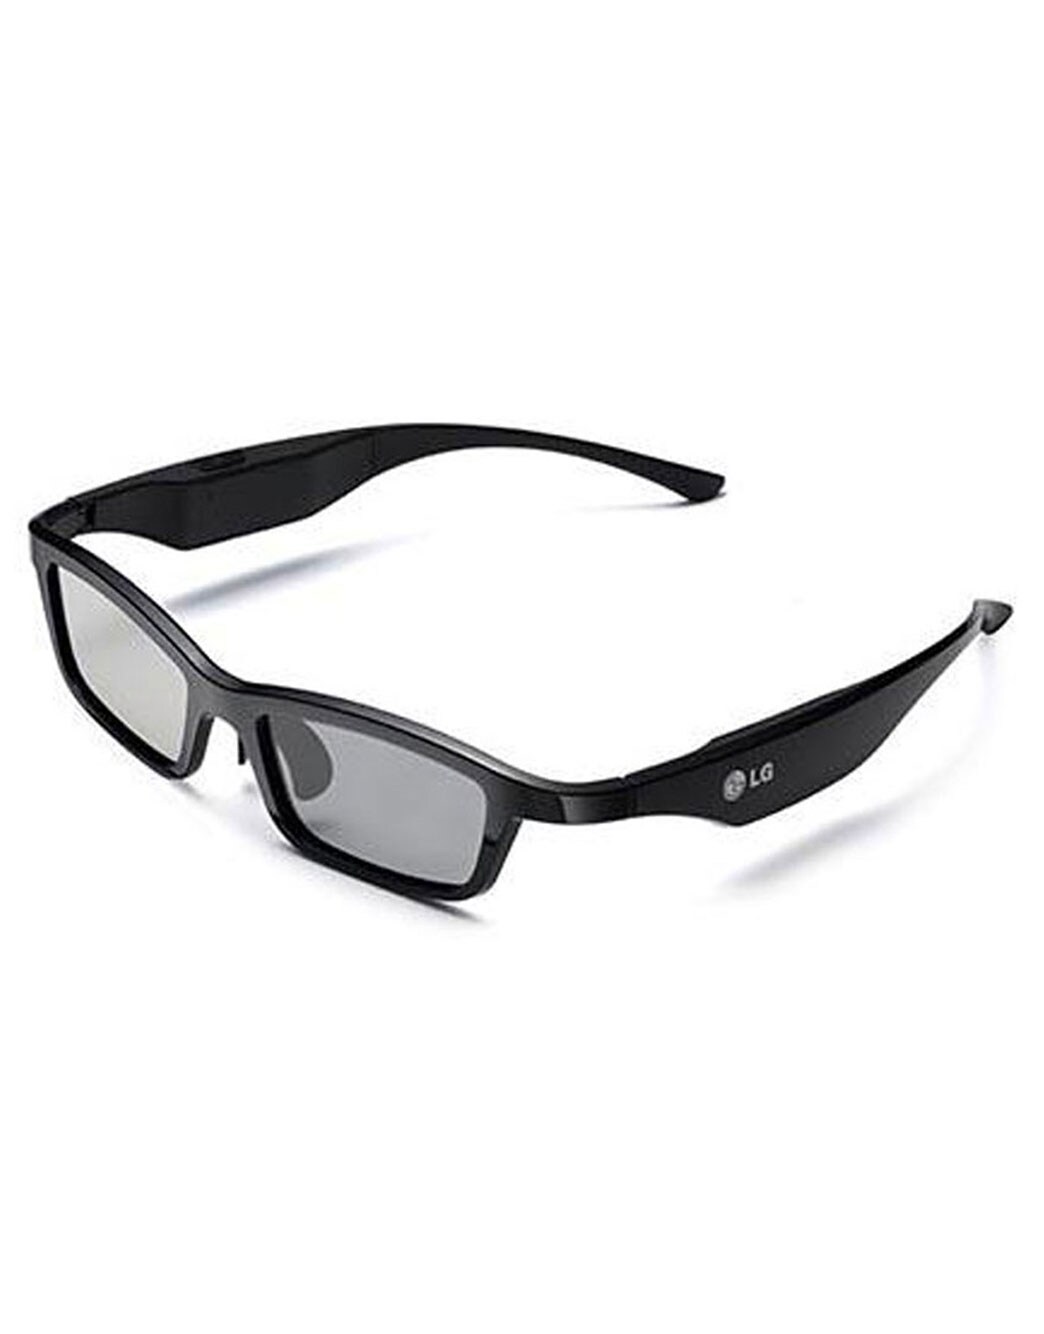 LG AG-S350 Active 3D Glasses for LG Plasma TVs | LG USA